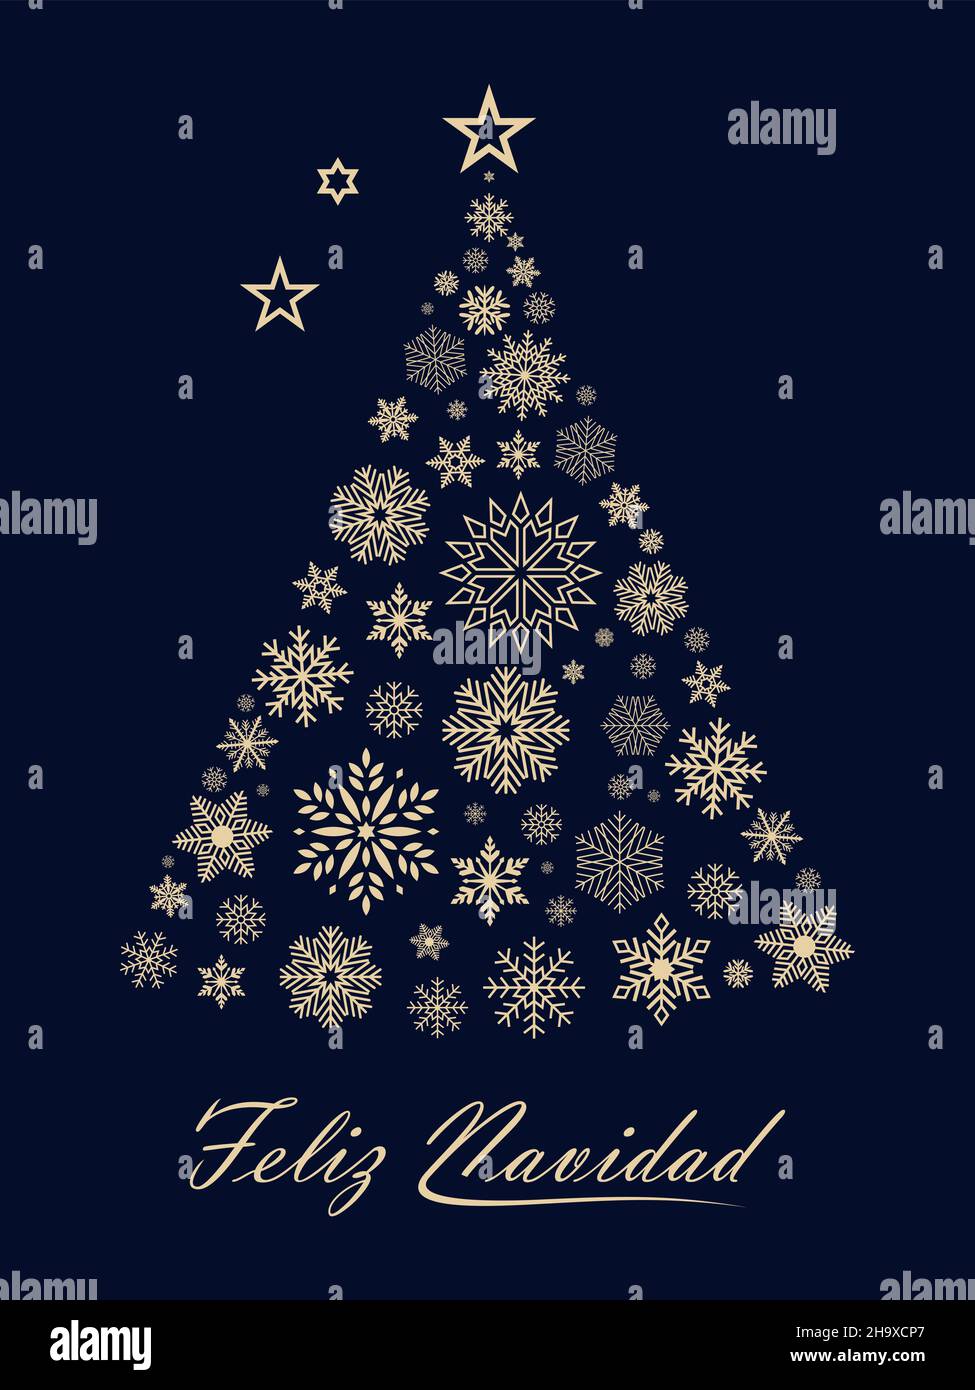 Sapin de Noël vectoriel avec flocons de neige et voeux de noël espagnol sur  fond noir.Traduction espagnol vers anglais: Feliz Navidad est Joyeux Noël  Image Vectorielle Stock - Alamy